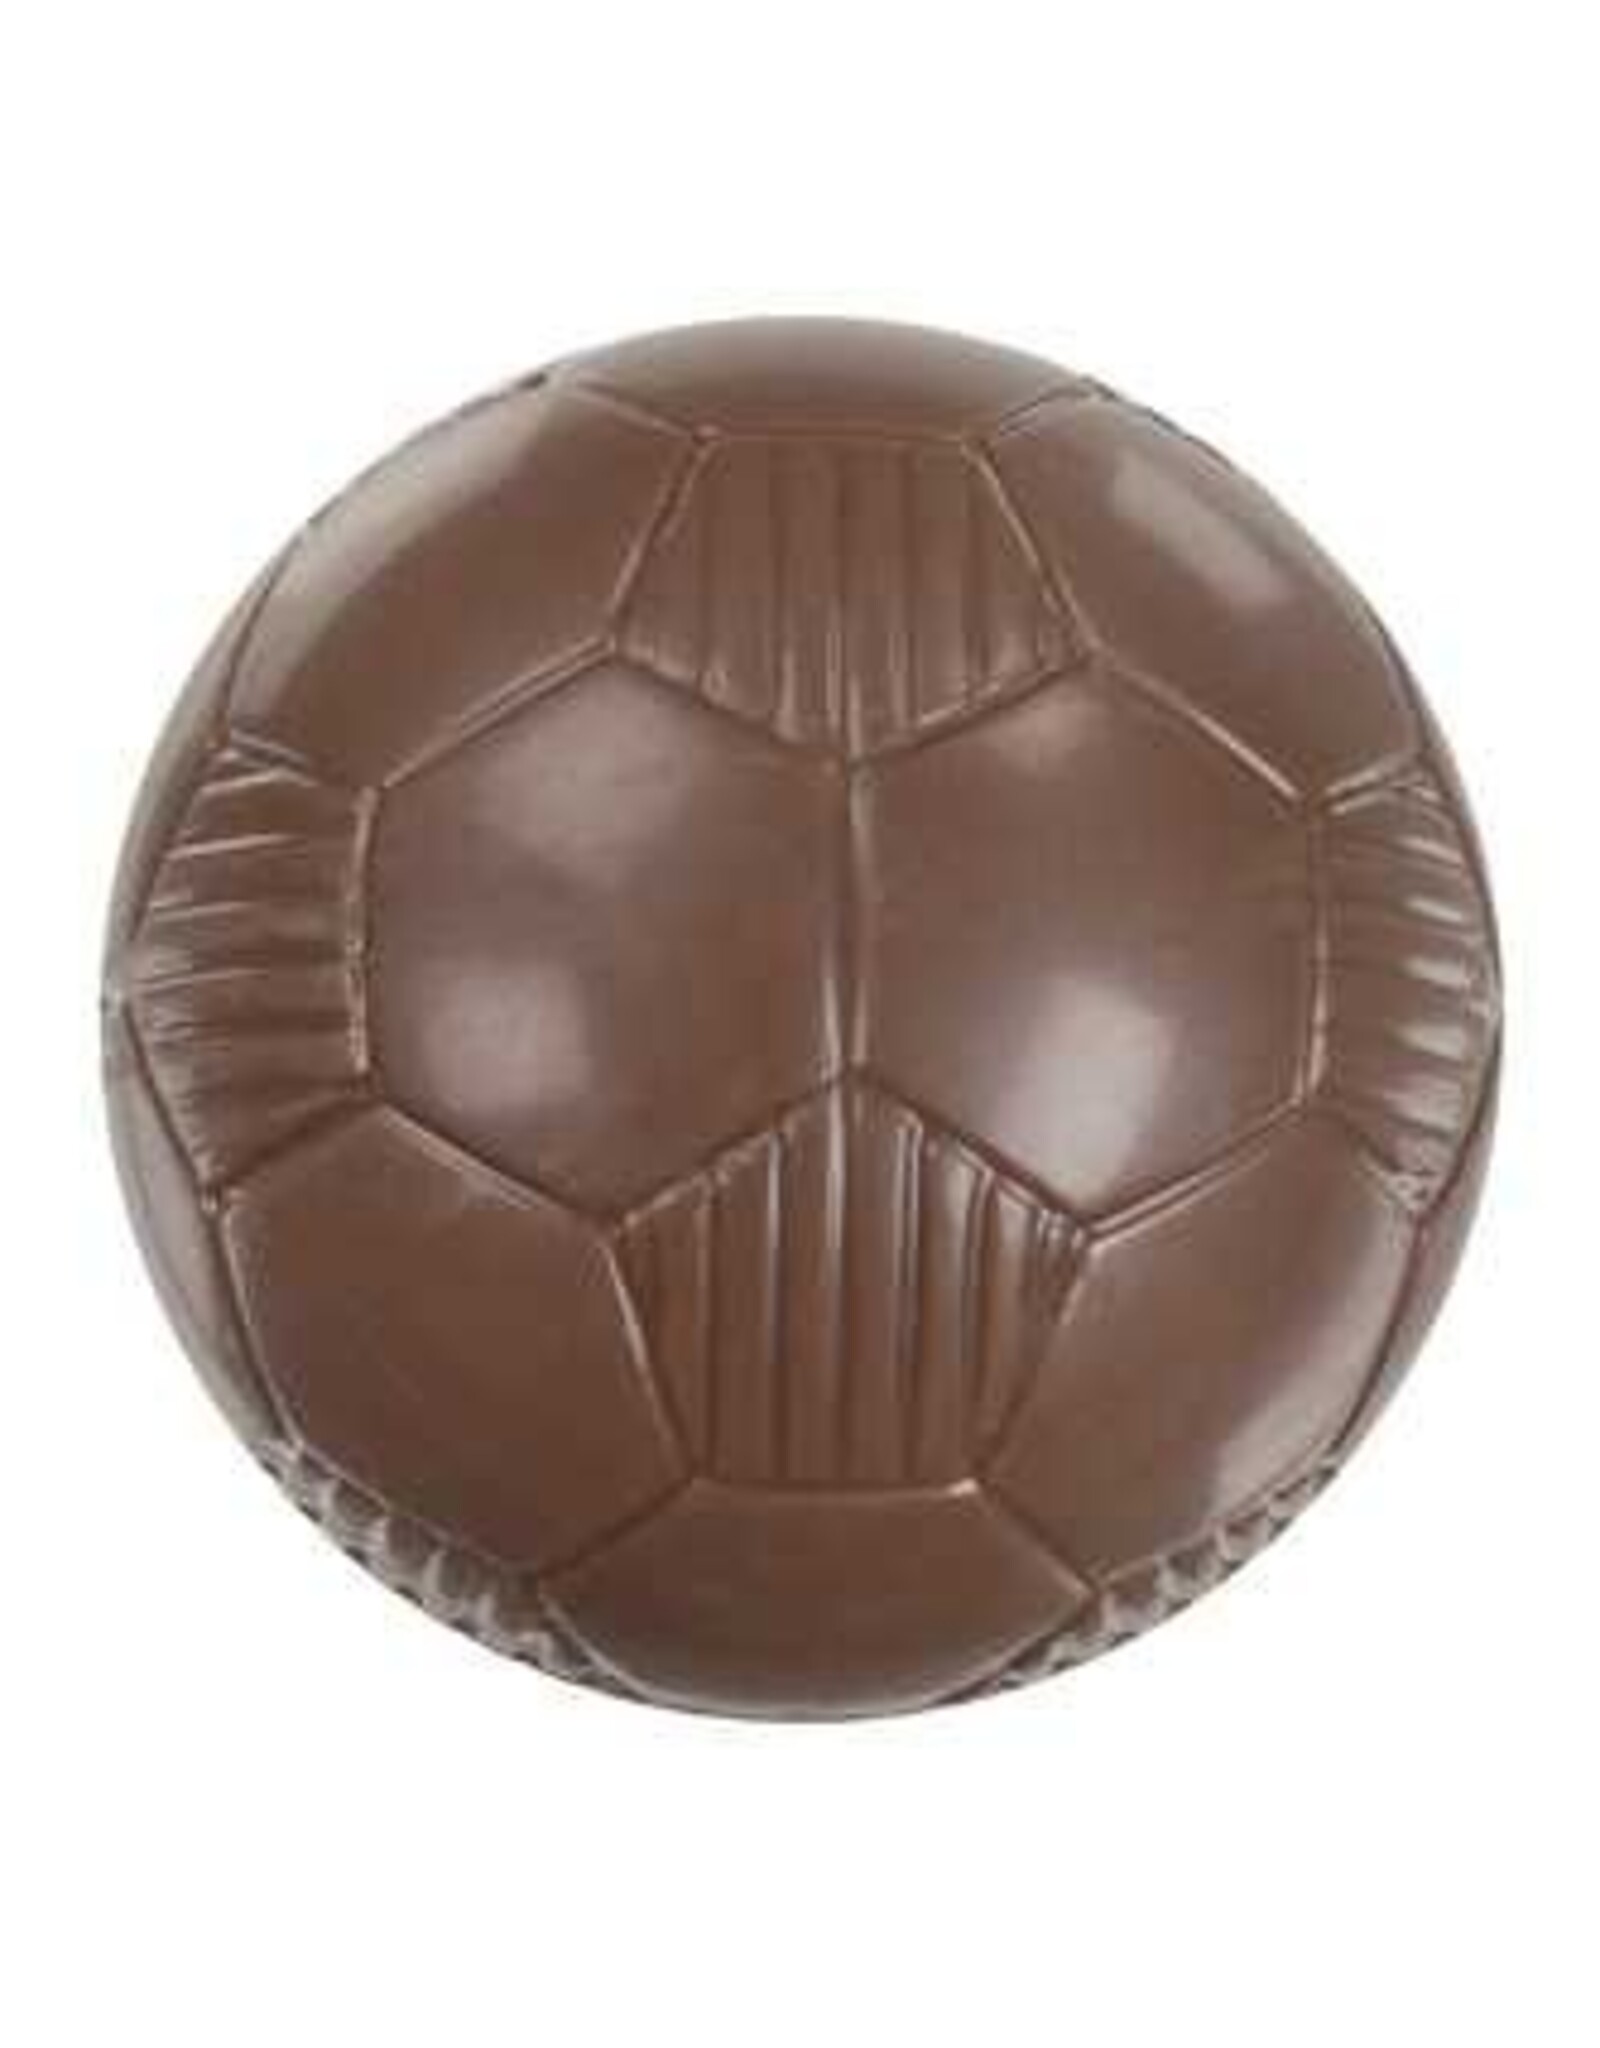 Voetbal chocolade 4.5 cm diameter - per 5 stuks verpakt